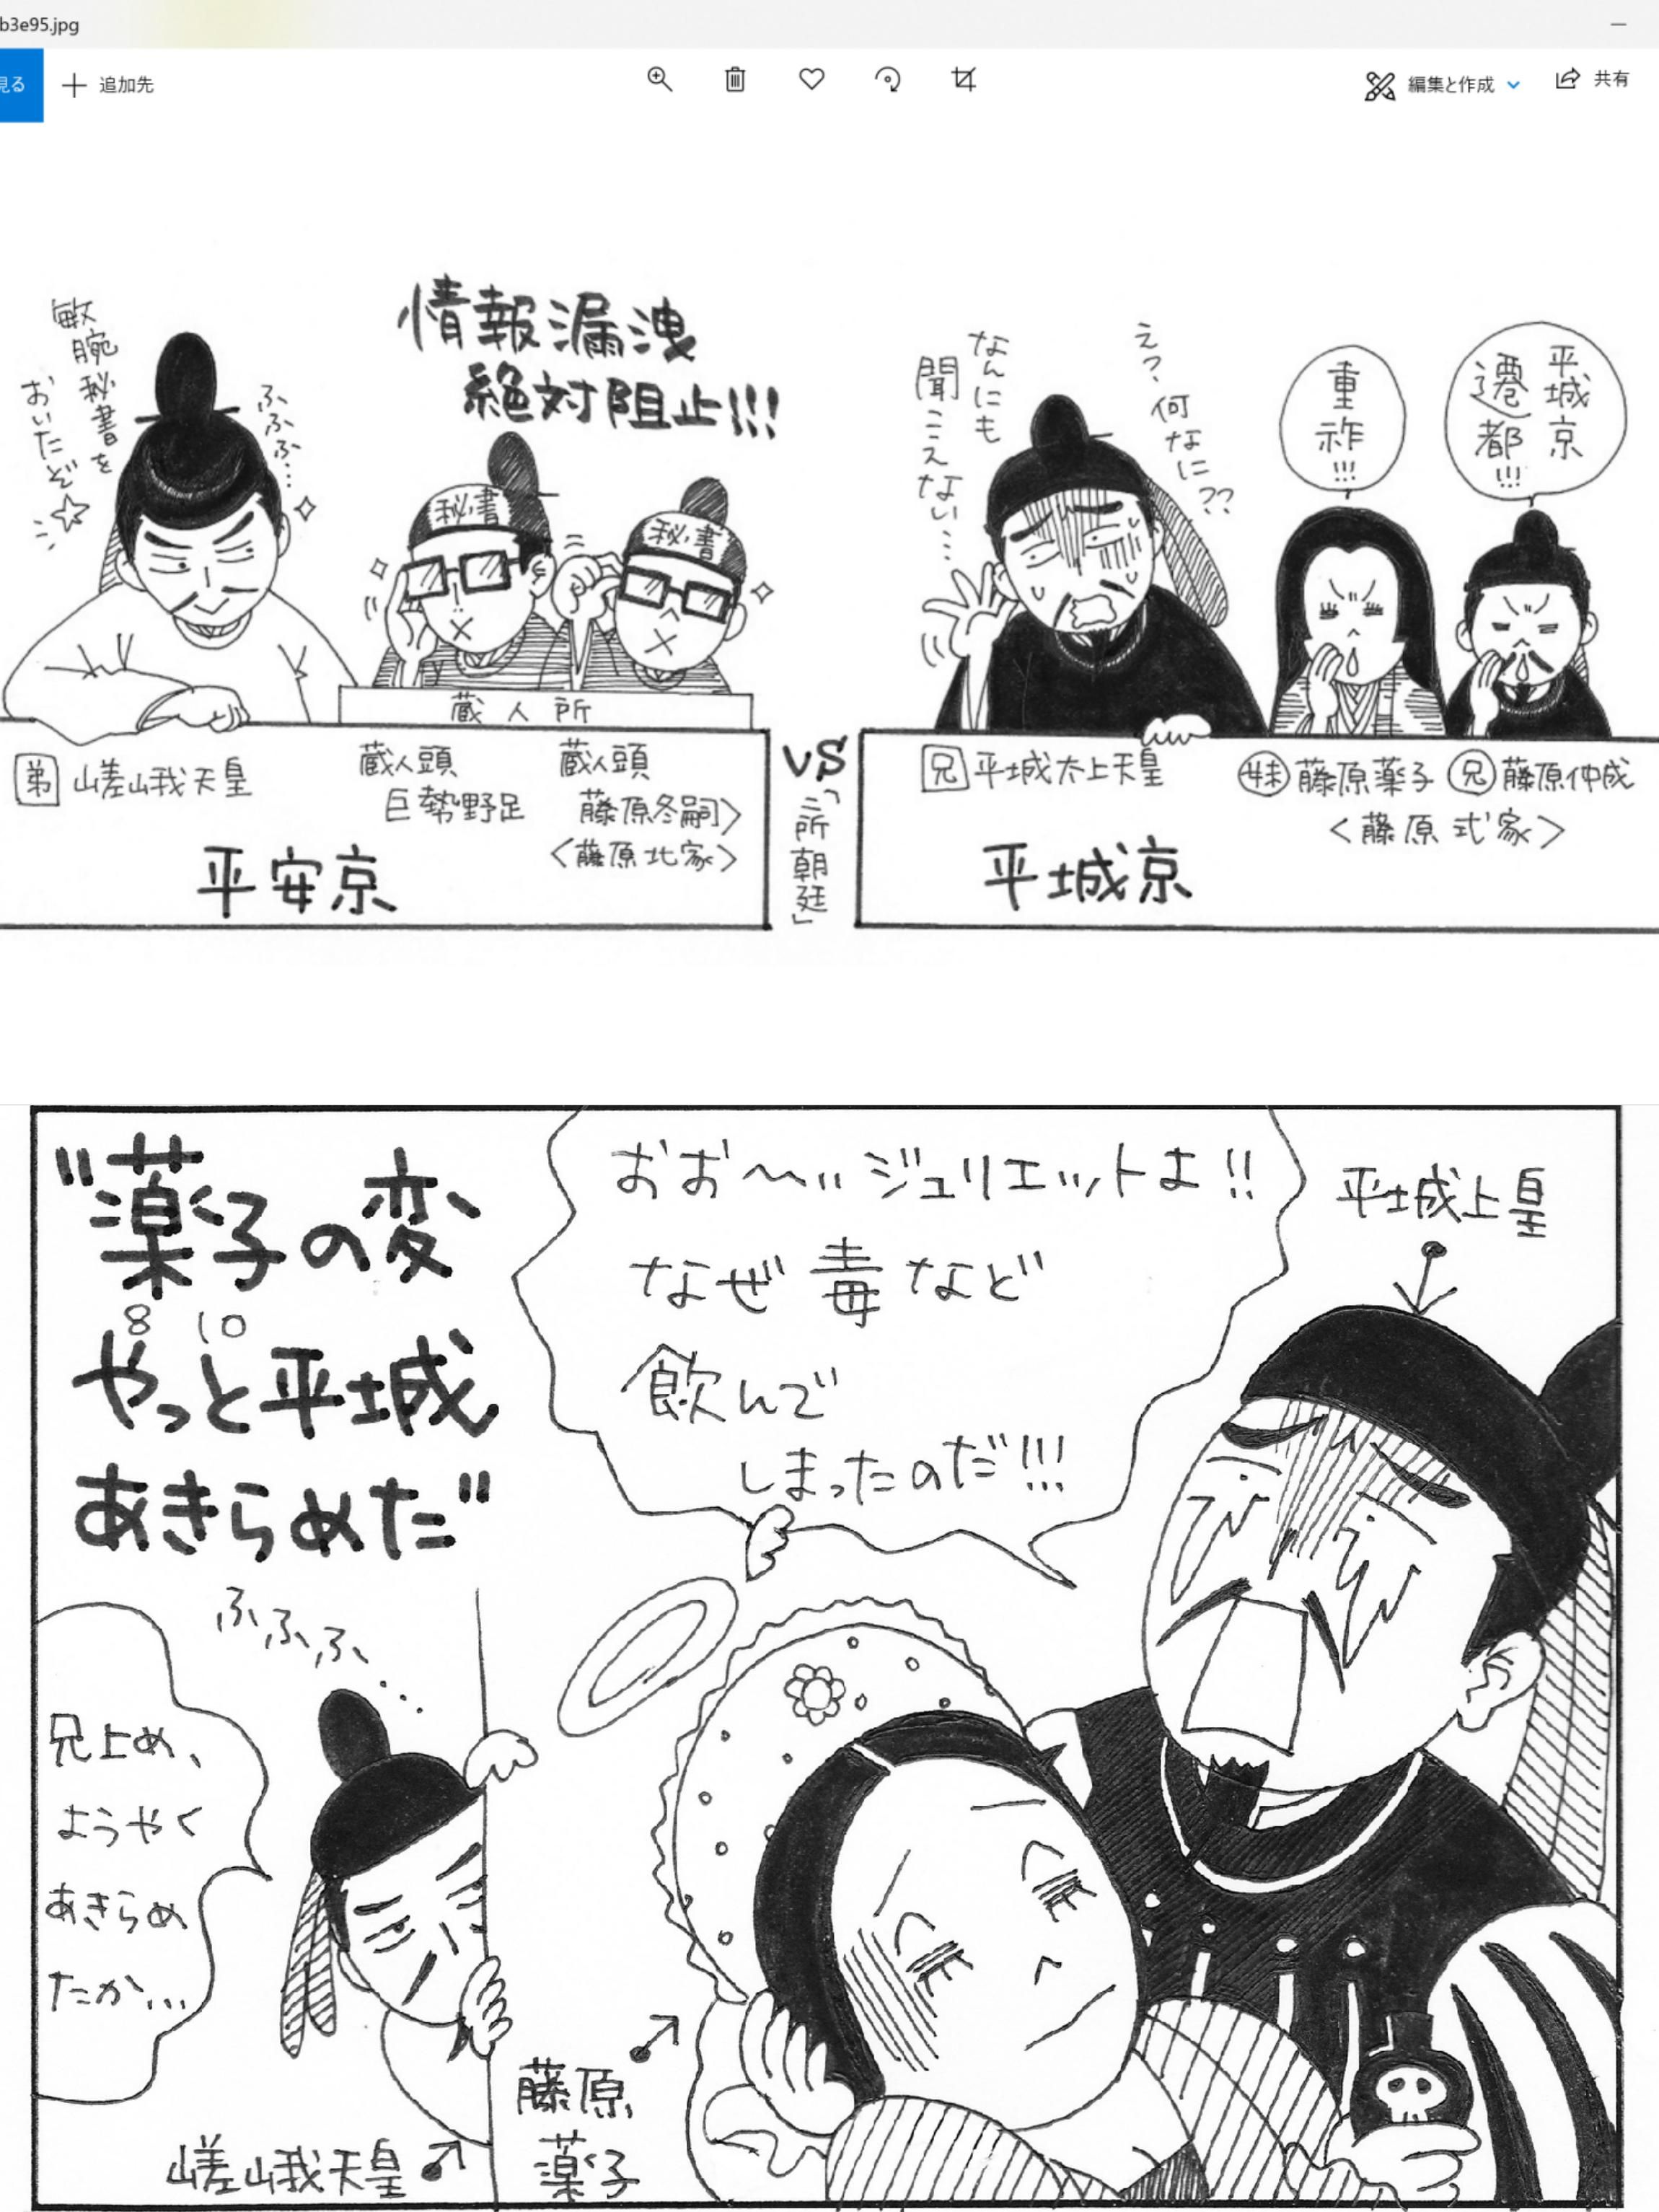 3ページ目の 霊言 過去世 日本は沈没しないみたい 笑 楽天ブログ